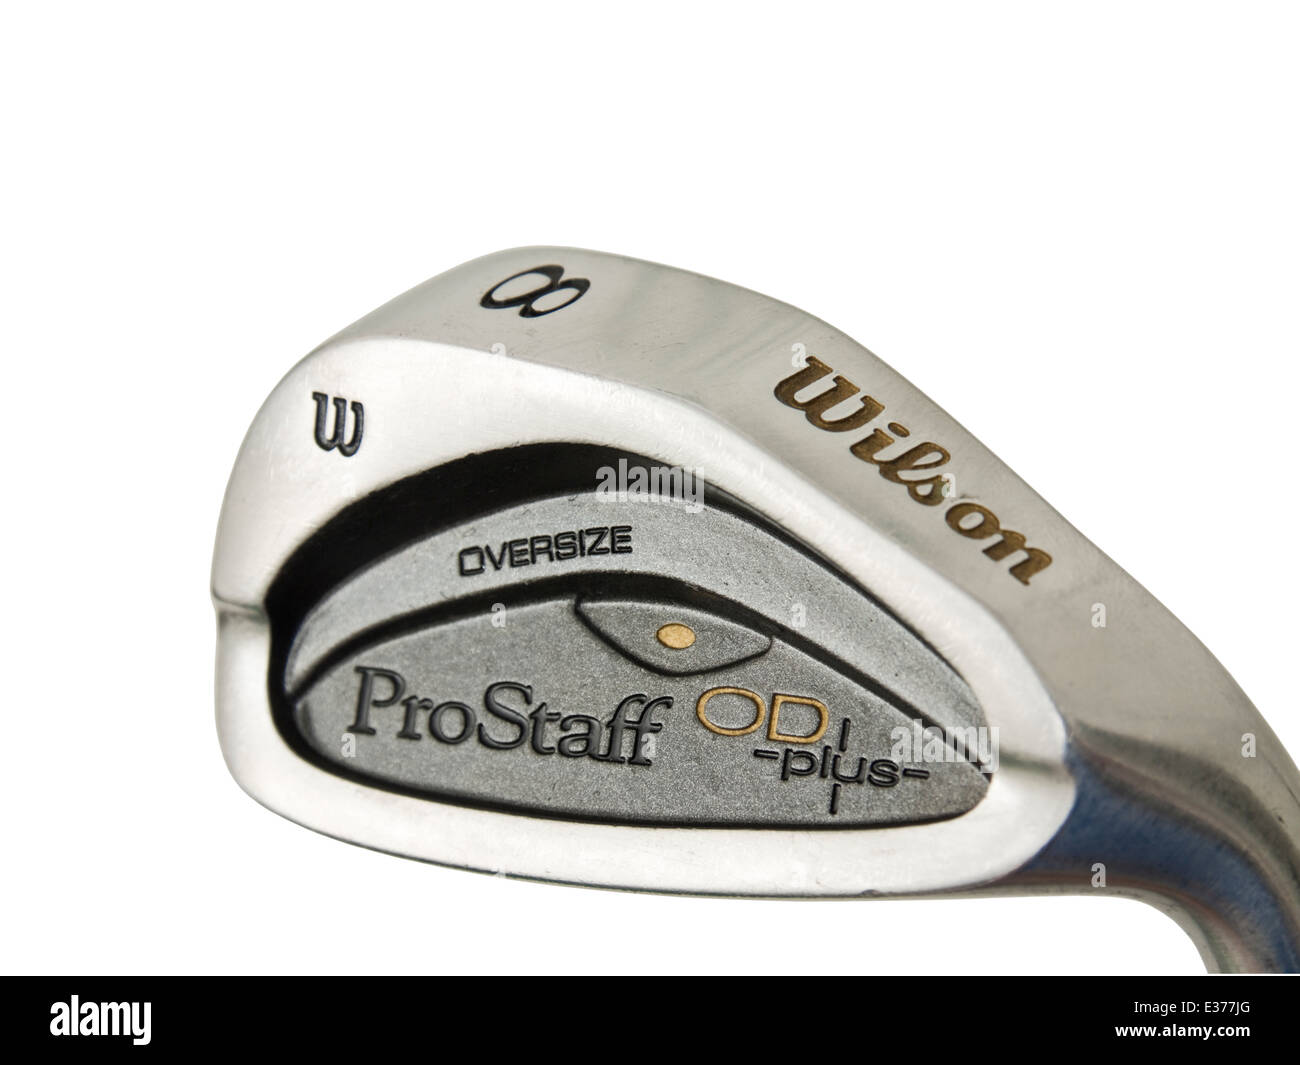 Wilson ProStaff OD Plus Oversize golf club / iron Stock Photo - Alamy